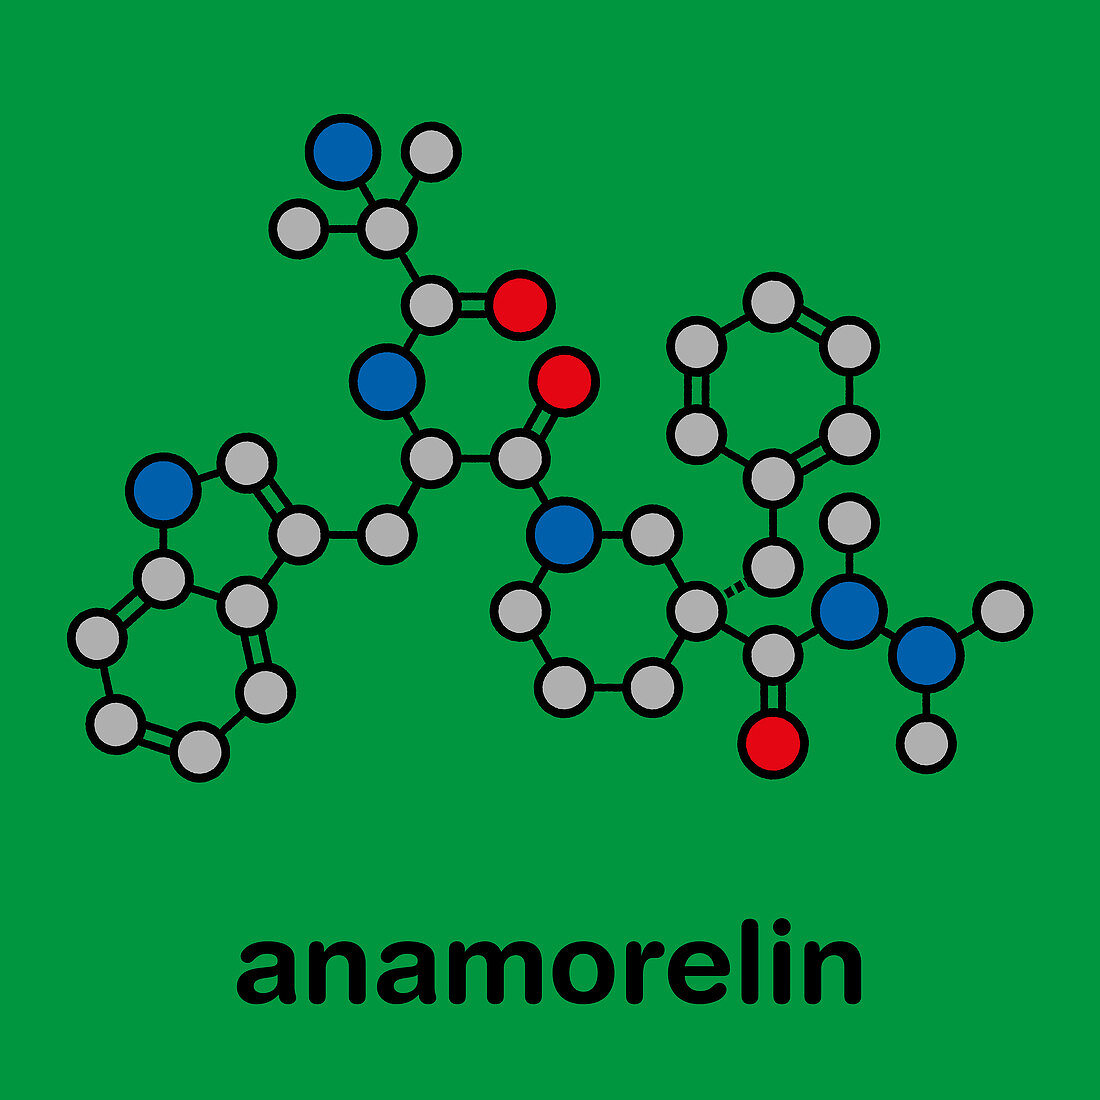 Anamorelin cancer cachexia and anorexia drug molecule